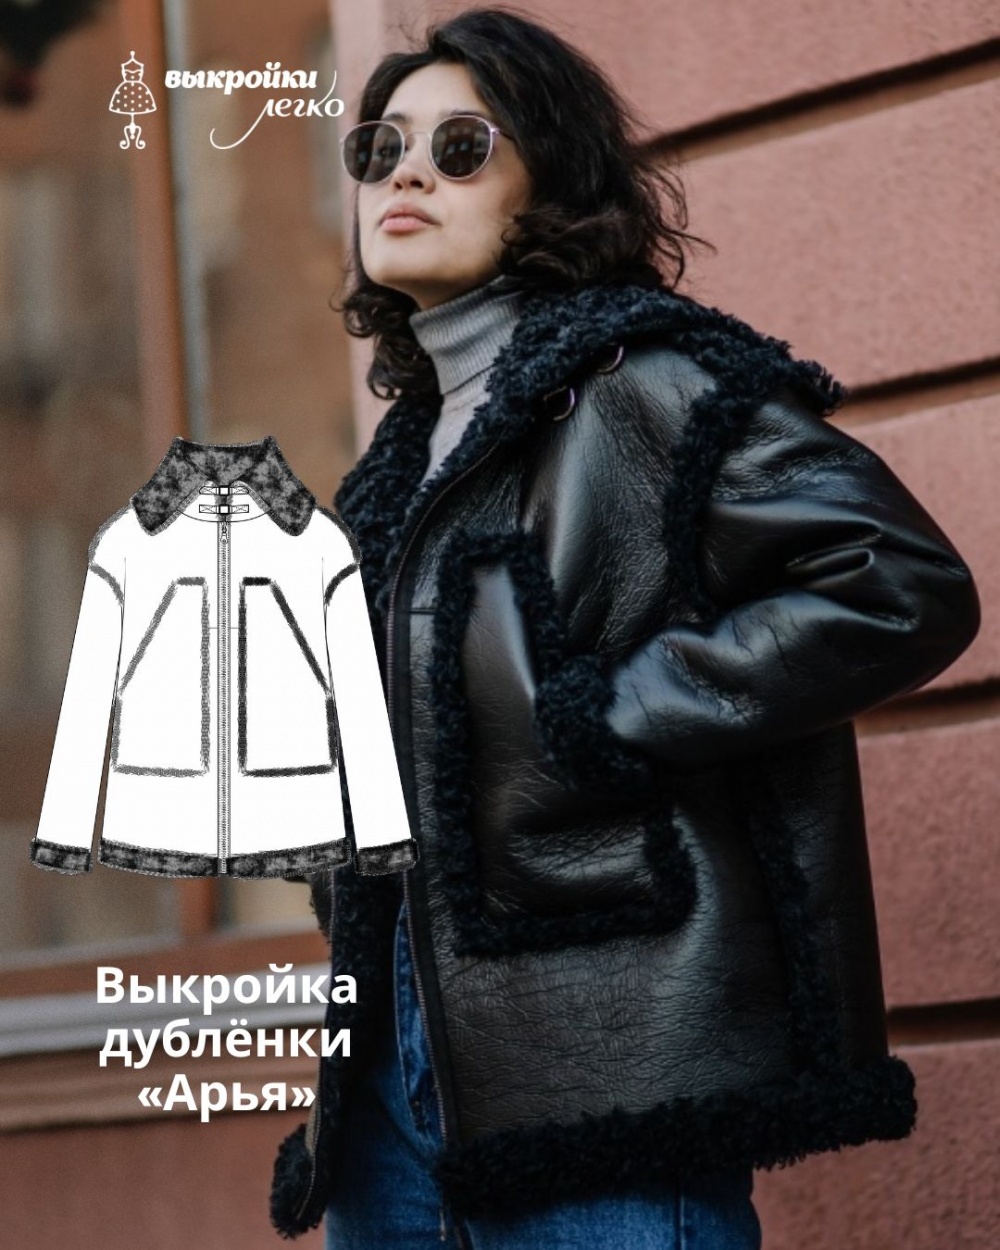 Иванка - интернет-магазин одежды в русском стиле